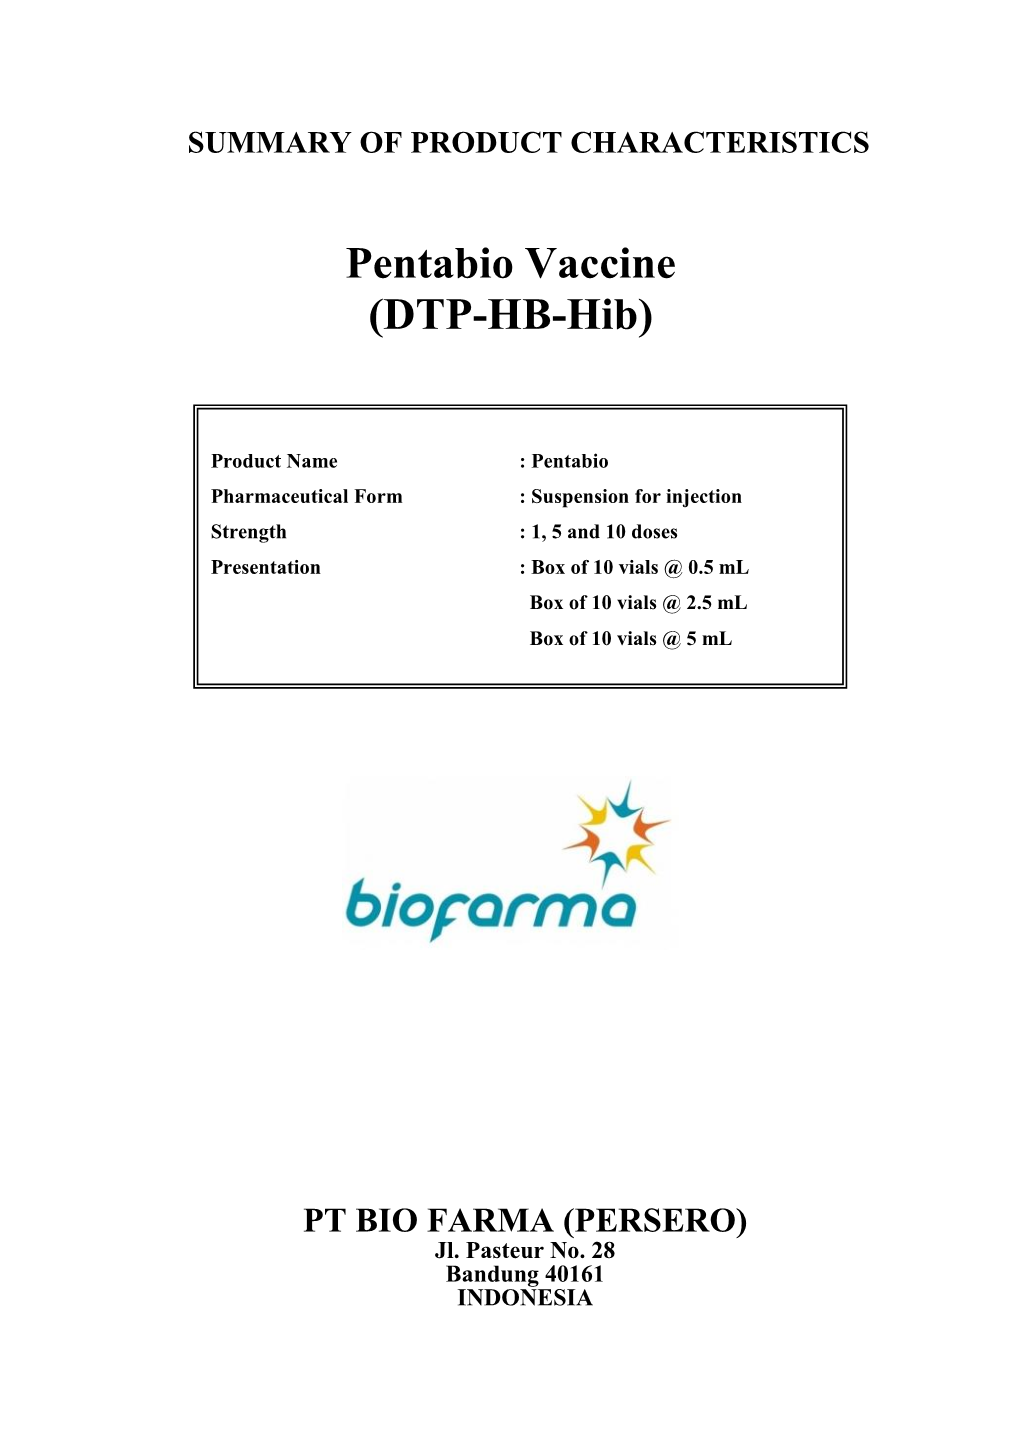 Pentabio Vaccine (DTP-HB-Hib)